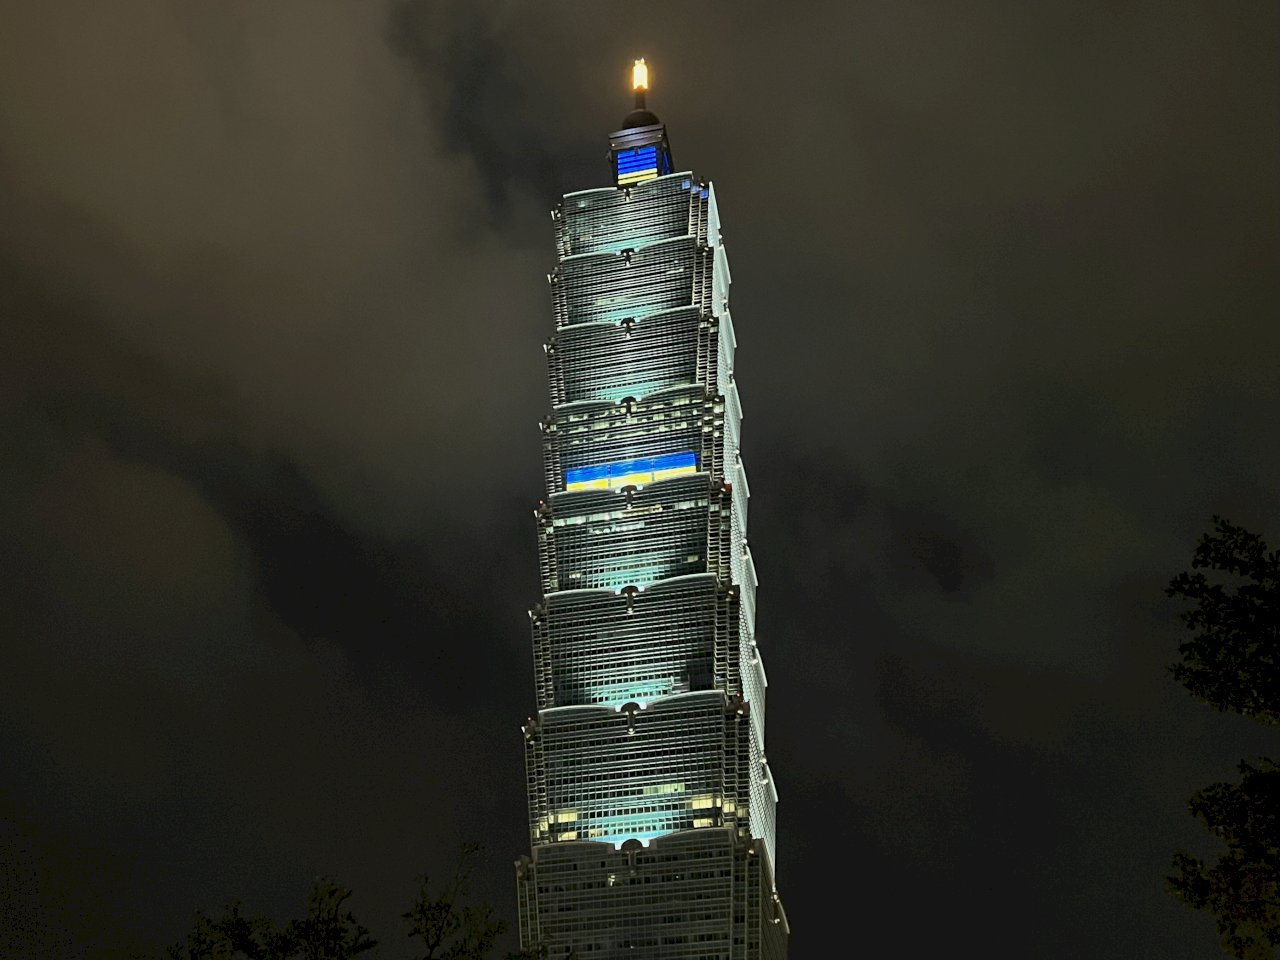 台北101晚間點燈秀烏克蘭國旗 為世界和平祈福 (影音 )